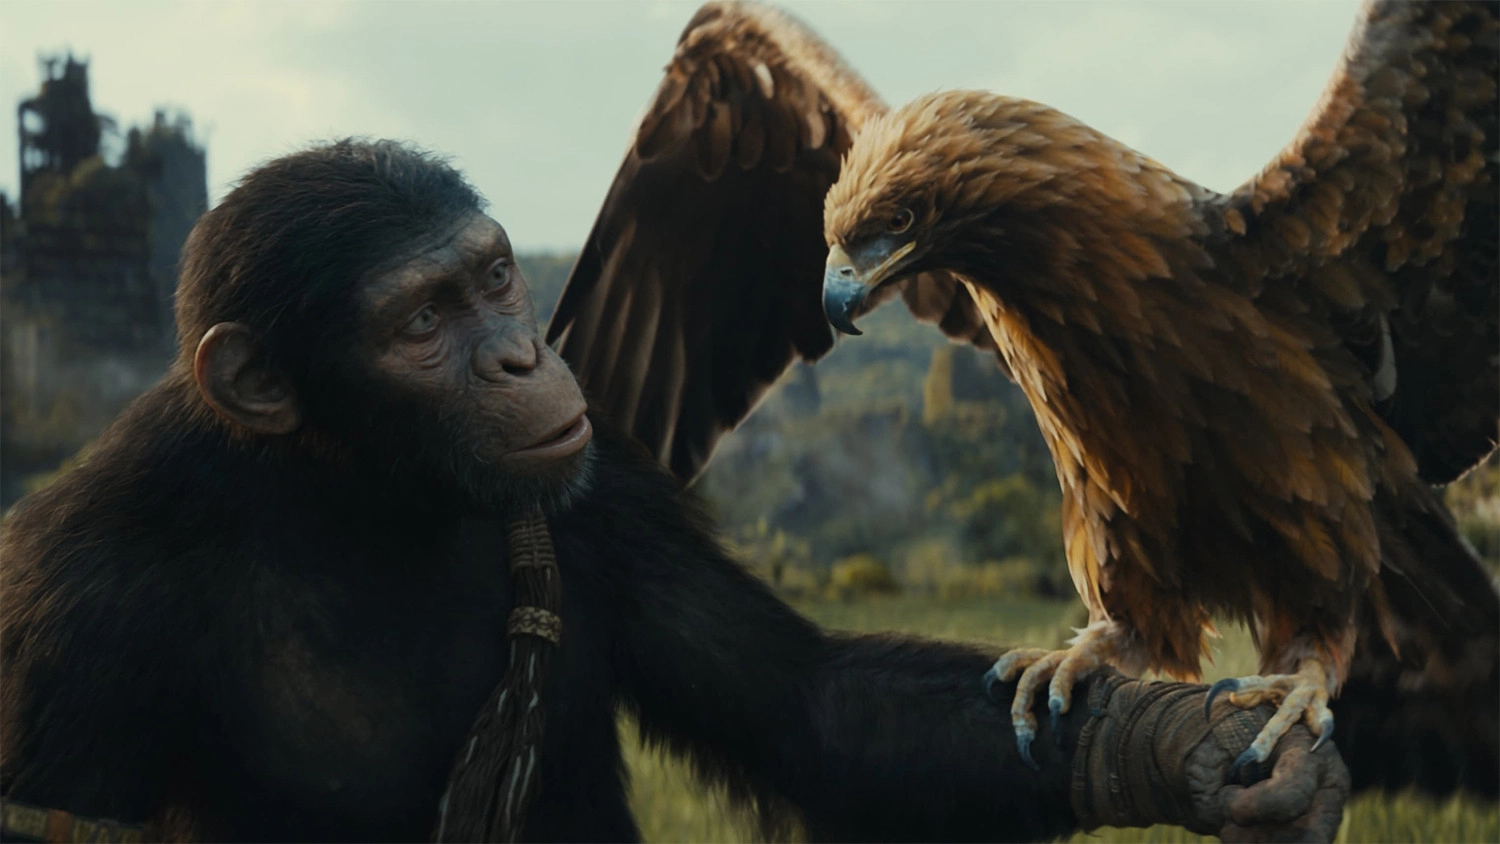 Review phim Hành Tinh Khỉ: Vương Quốc Mới, Con đại bàng chao lượn và đậu trên tay chú khỉ trẻ dẫn dắt vào vương quốc mới của hành tinh khỉ trong tương lai